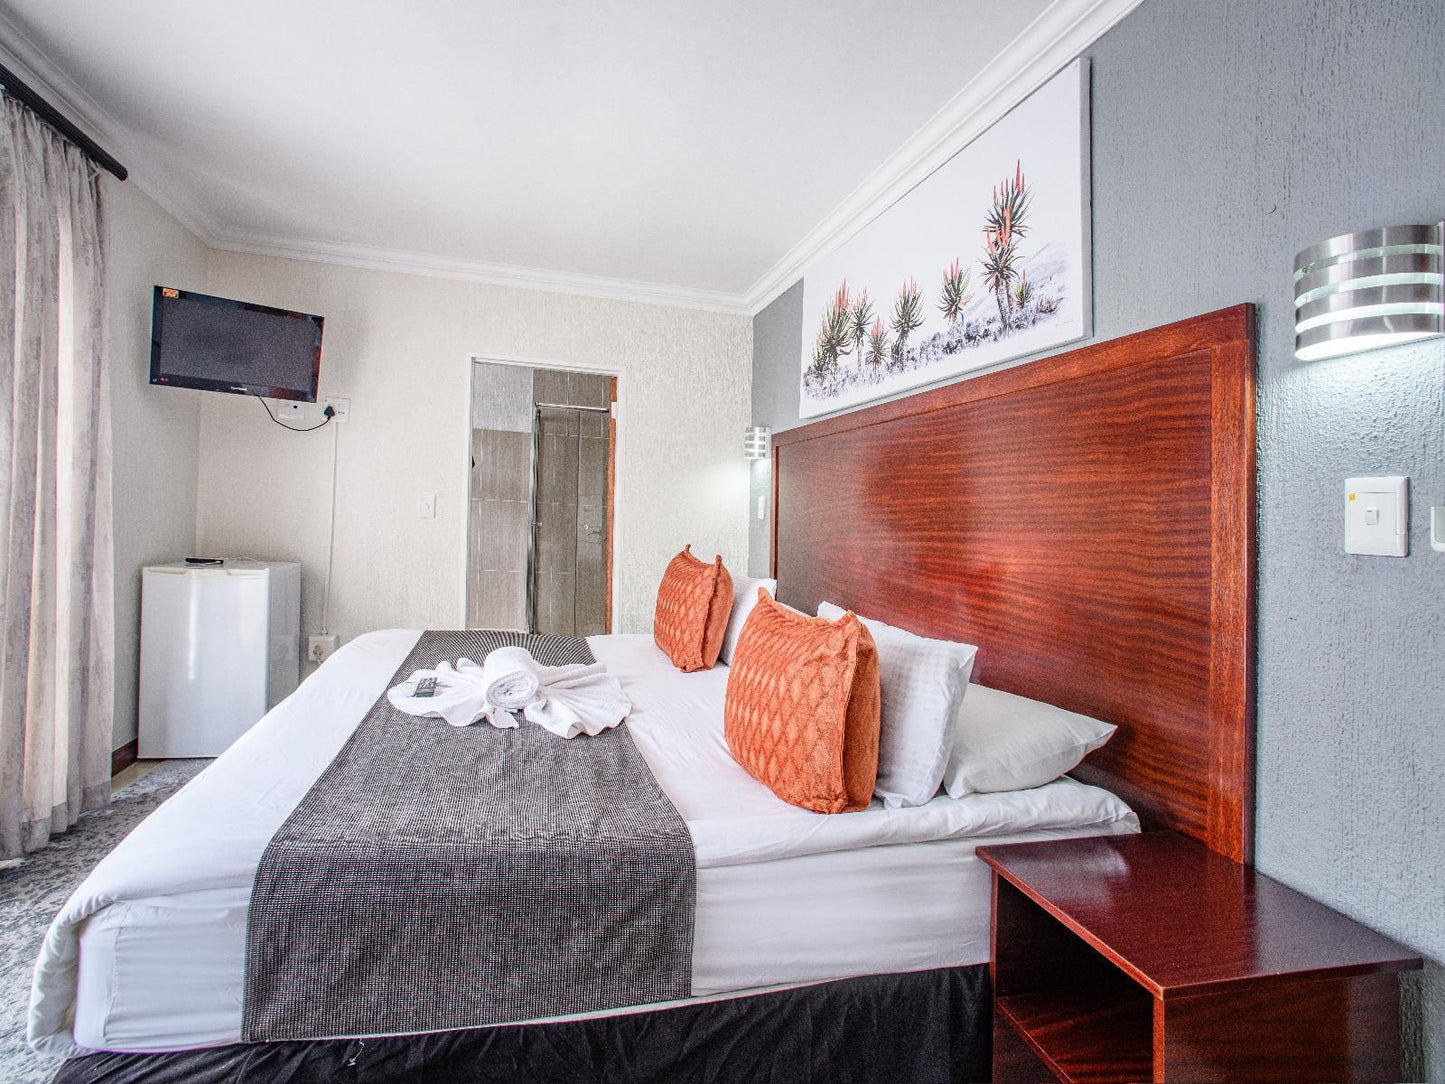 Khayalami Hotels Mbombela Sonheuwel Central Nelspruit Mpumalanga South Africa Bedroom